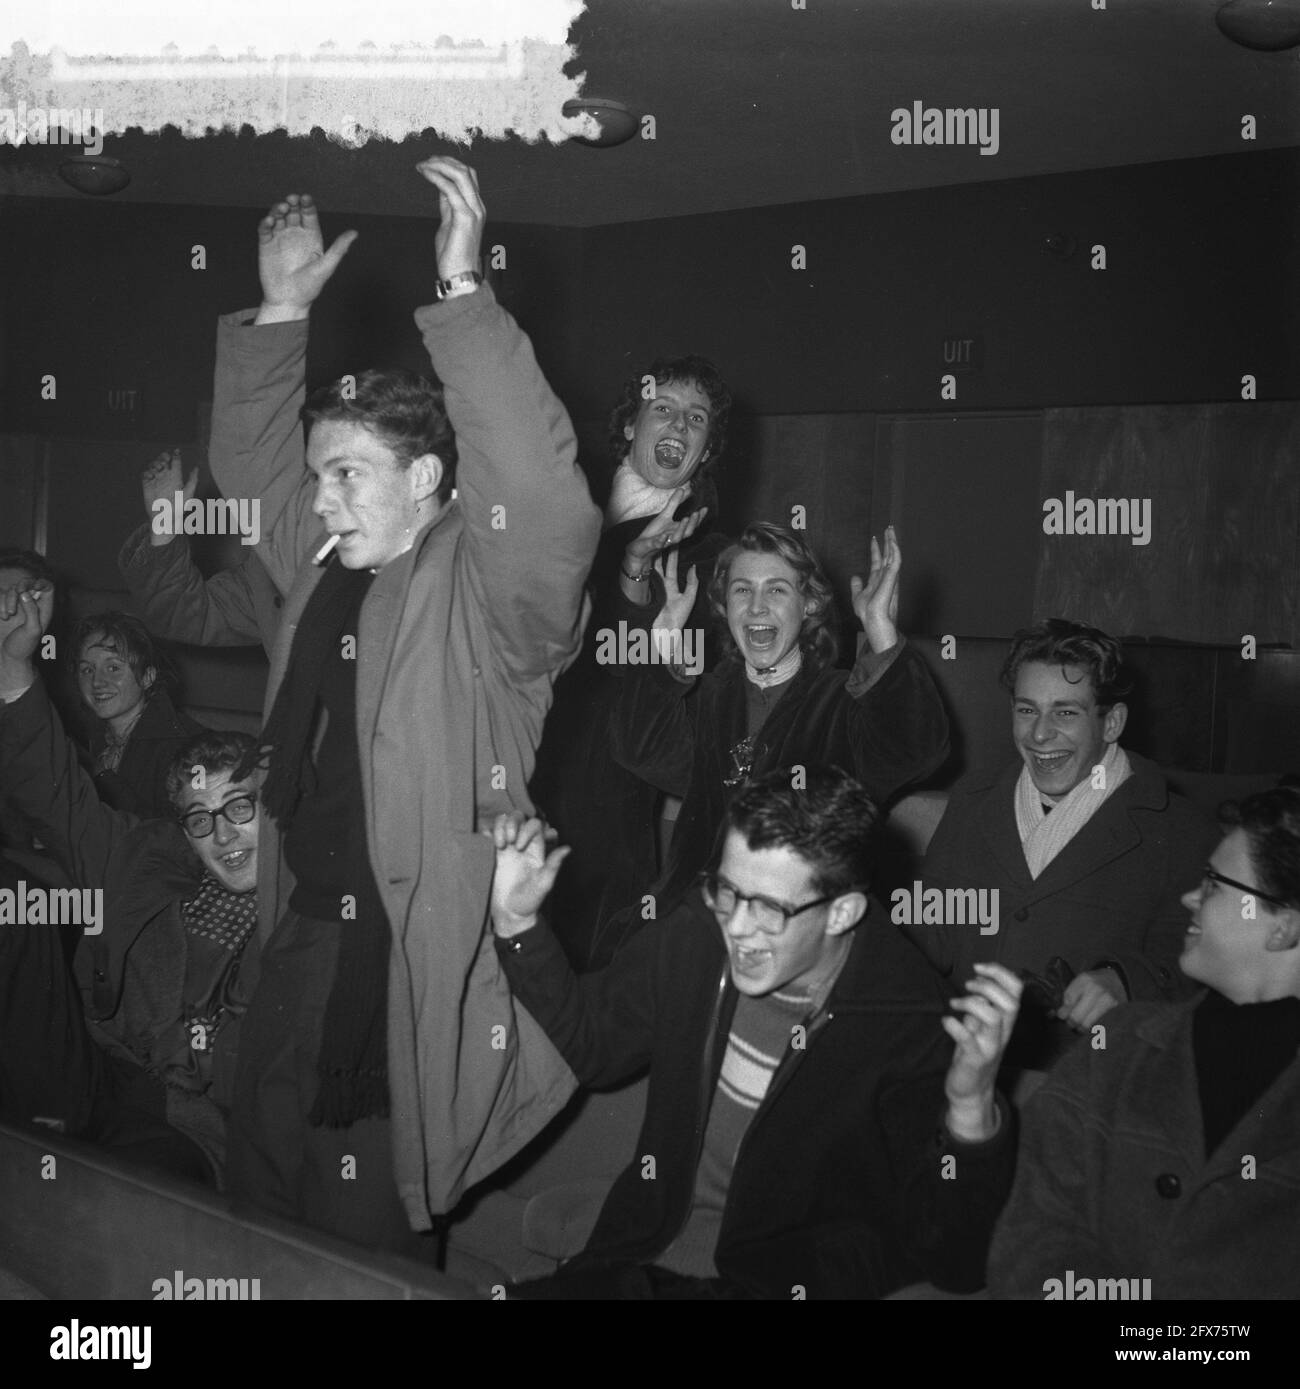 A Amsterdam, trois cinémas ont joué des disques du rock américain et lancé le roi Elvis Presley pendant la pause déjeuner de vendredi, comme une publicité pour le film Love Me Tender qui sera sorti la semaine suivante. Un grand nombre de jeunes enthousiastes étaient présents au premier père, qui n'a pas longtemps été assis à leurs sièges à cause de la musique en mouvement et a commencé à danser Rock and Roll entre les rangs., 7 décembre 1956, cinémas, danse, Jeunesse, musique, pays-Bas, Agence de presse du XXe siècle photo, nouvelles à retenir, documentaire, photographie historique 1945-1990, histoires visuelles, humain Banque D'Images